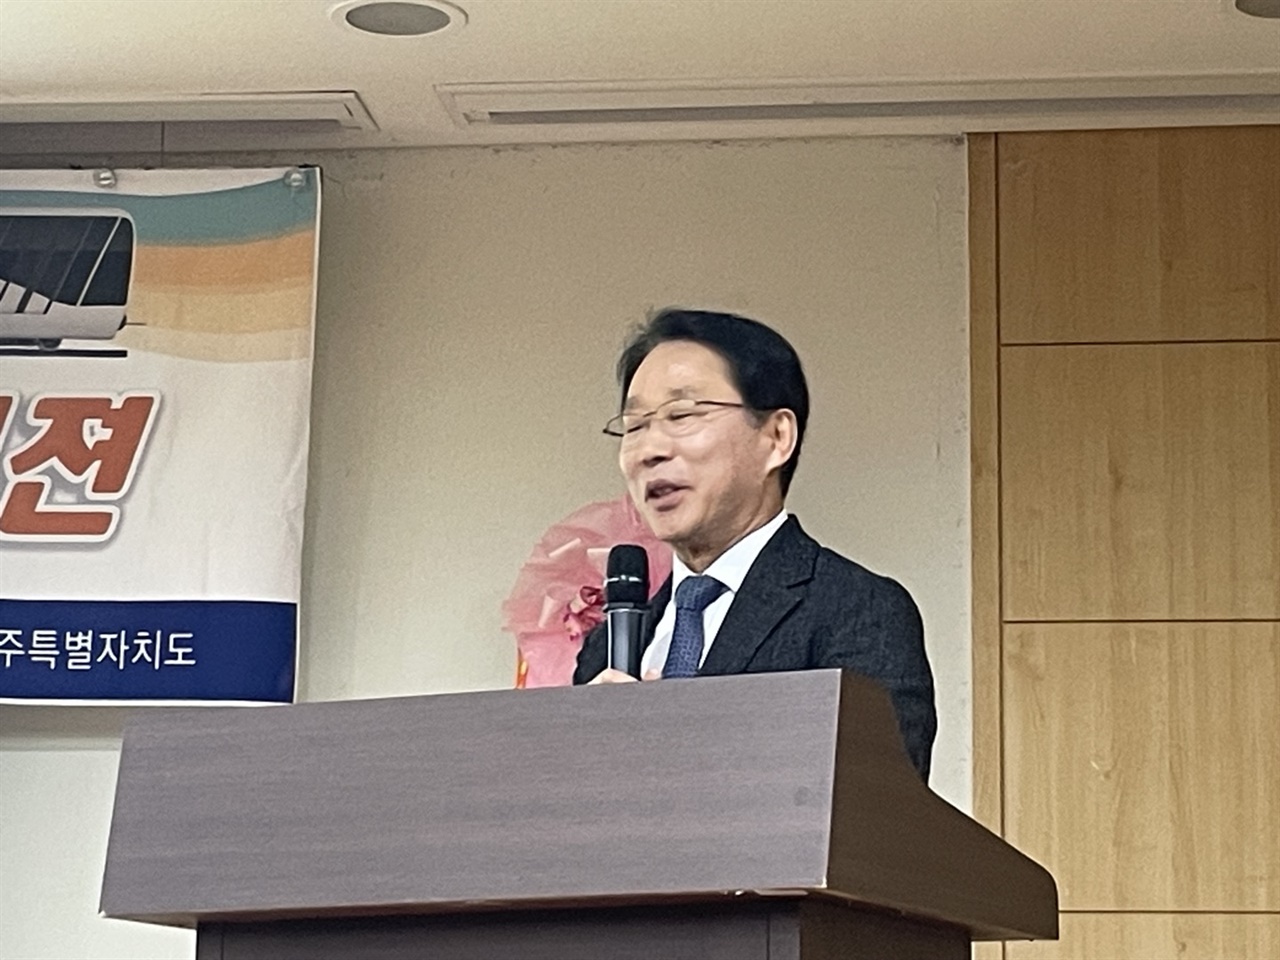  ‘제주의 미래를 위한 교통체계’에 대해 주제 발표하는 이창운 전 한국교통연구원장
